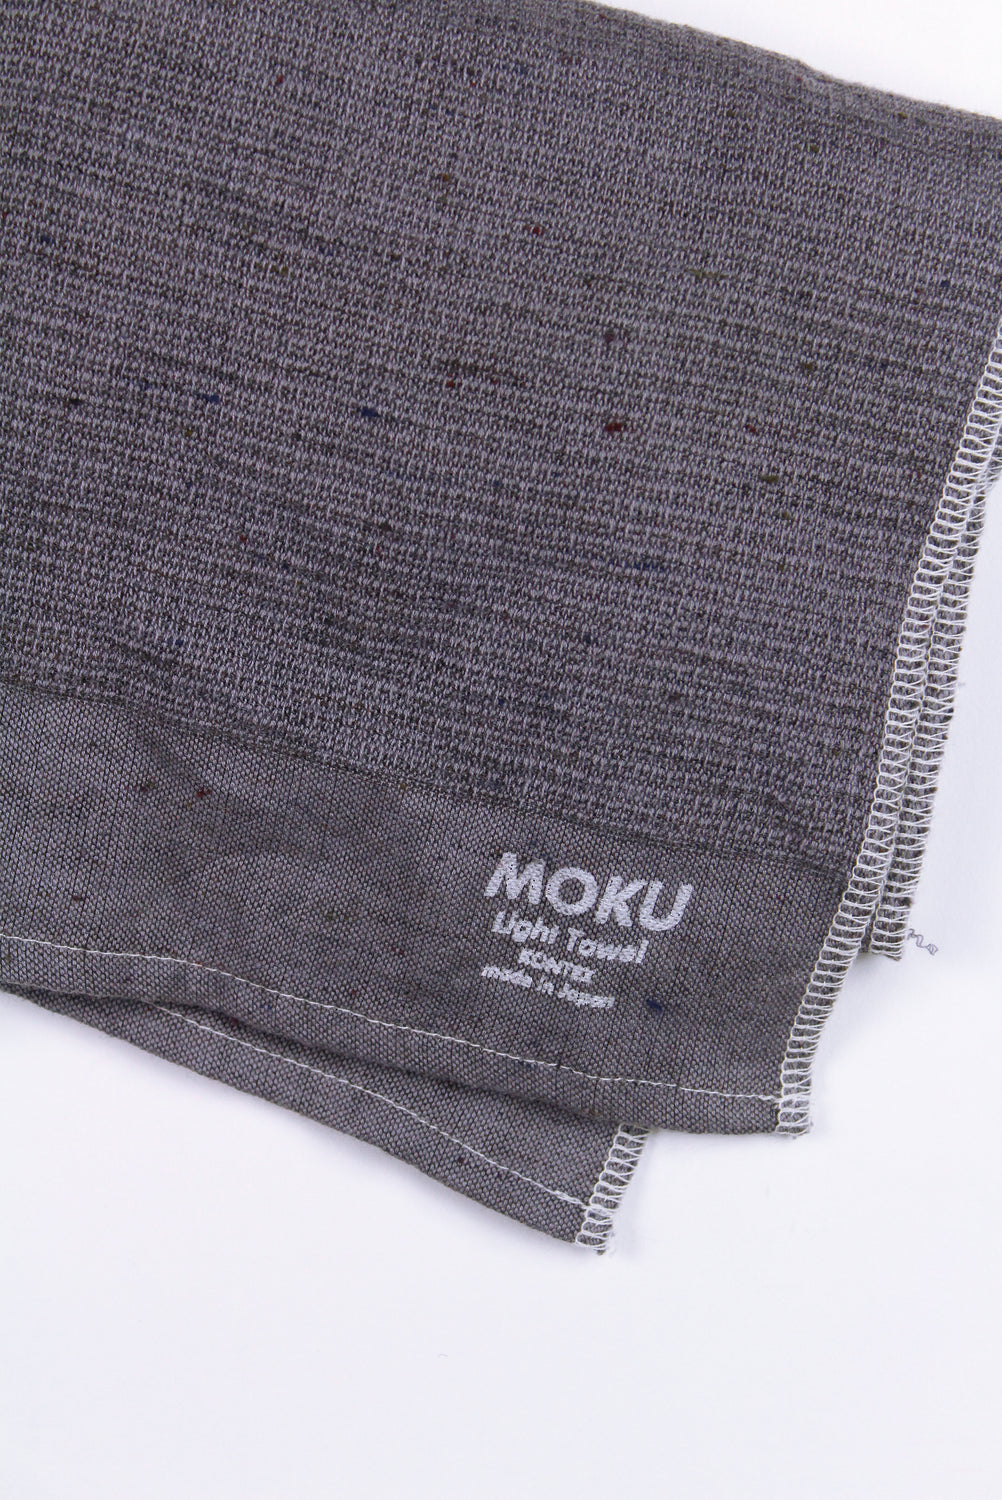 Moku Towel, Large